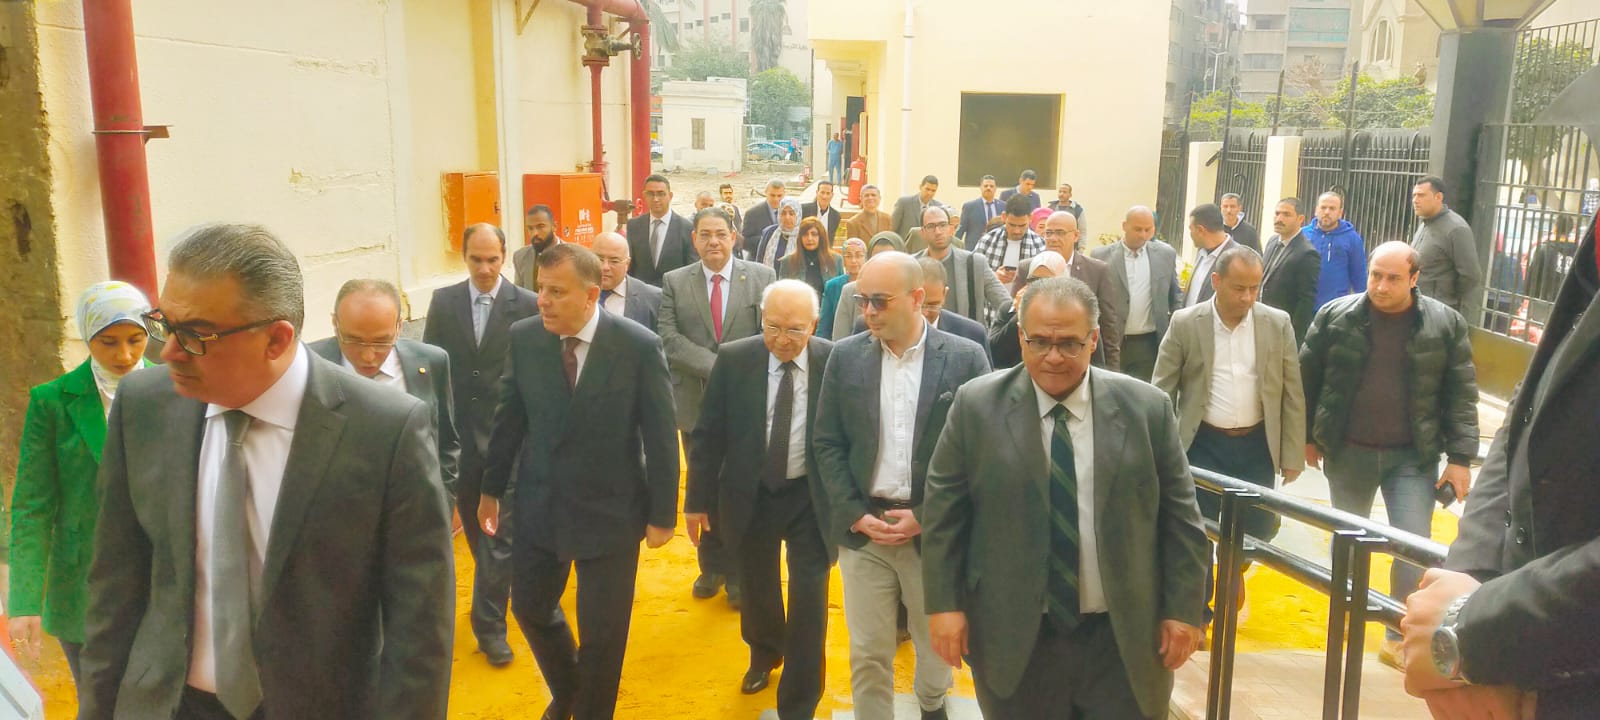 رئيس جامعة عين شمس يفتتح الجناح الاقتصادي بمستشفى الدمرداش للجراحة